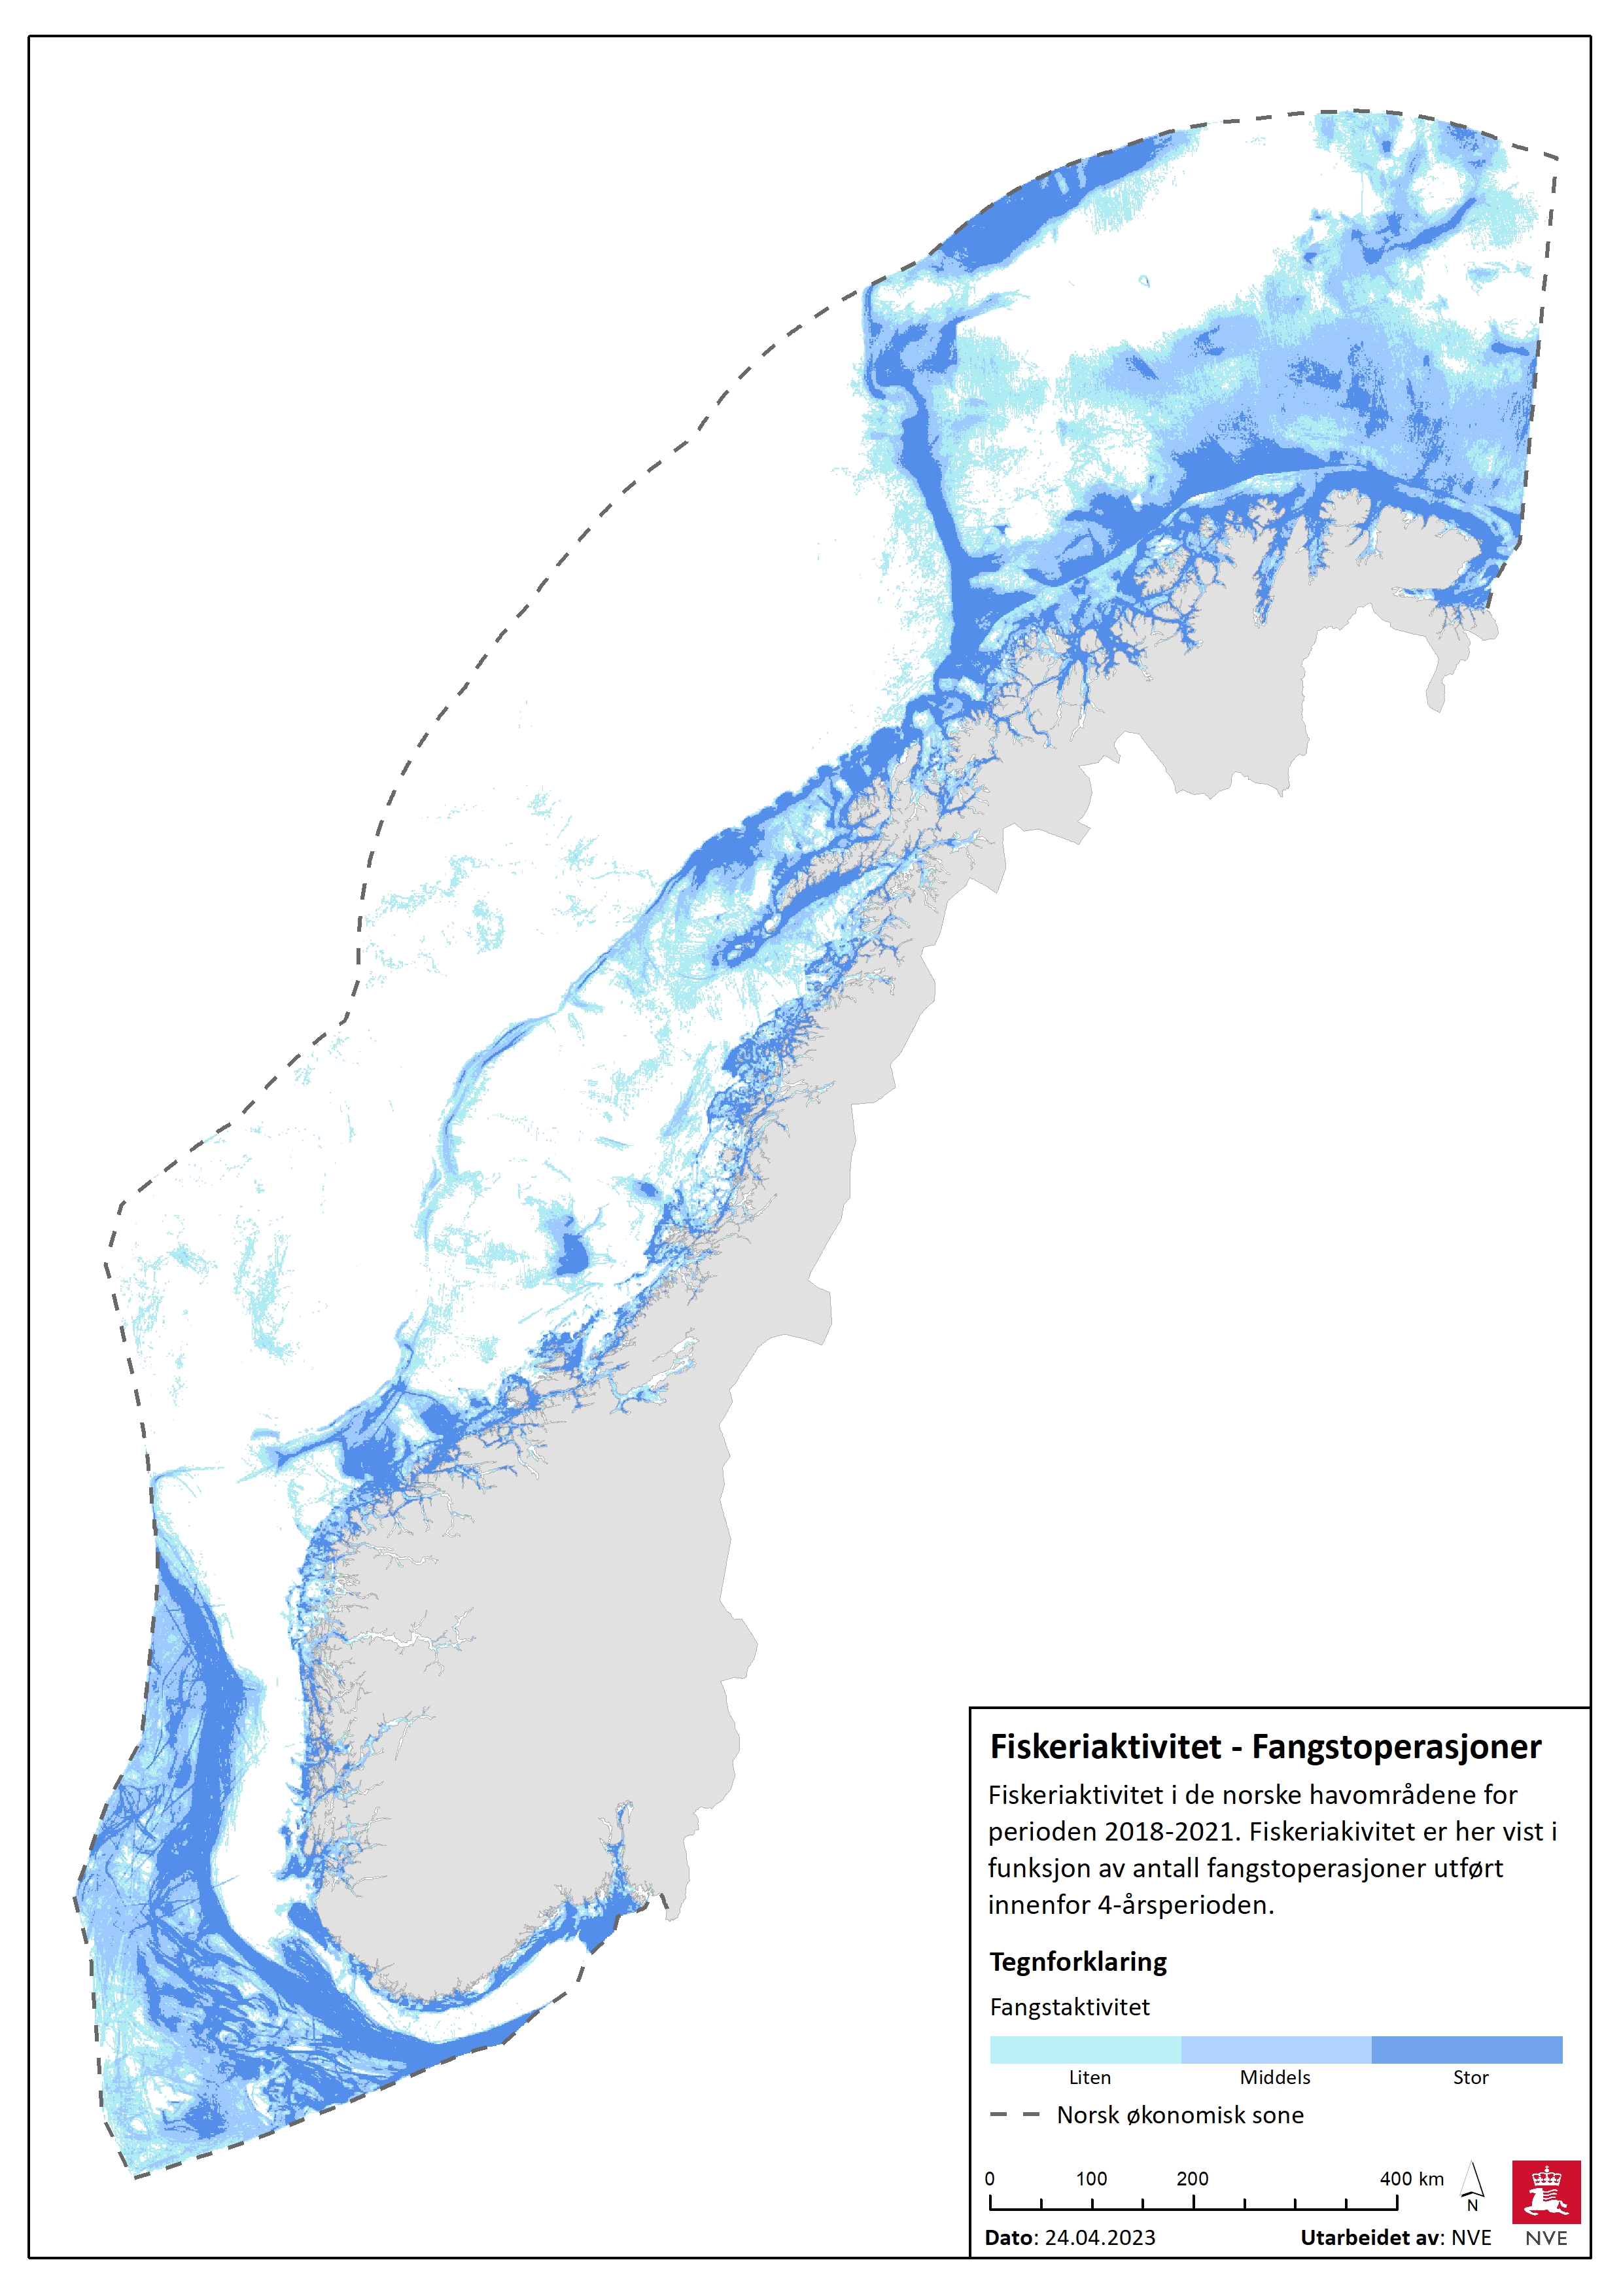 Fiskeriaktivitet i de norske havområdene for perioden 2018-2021.